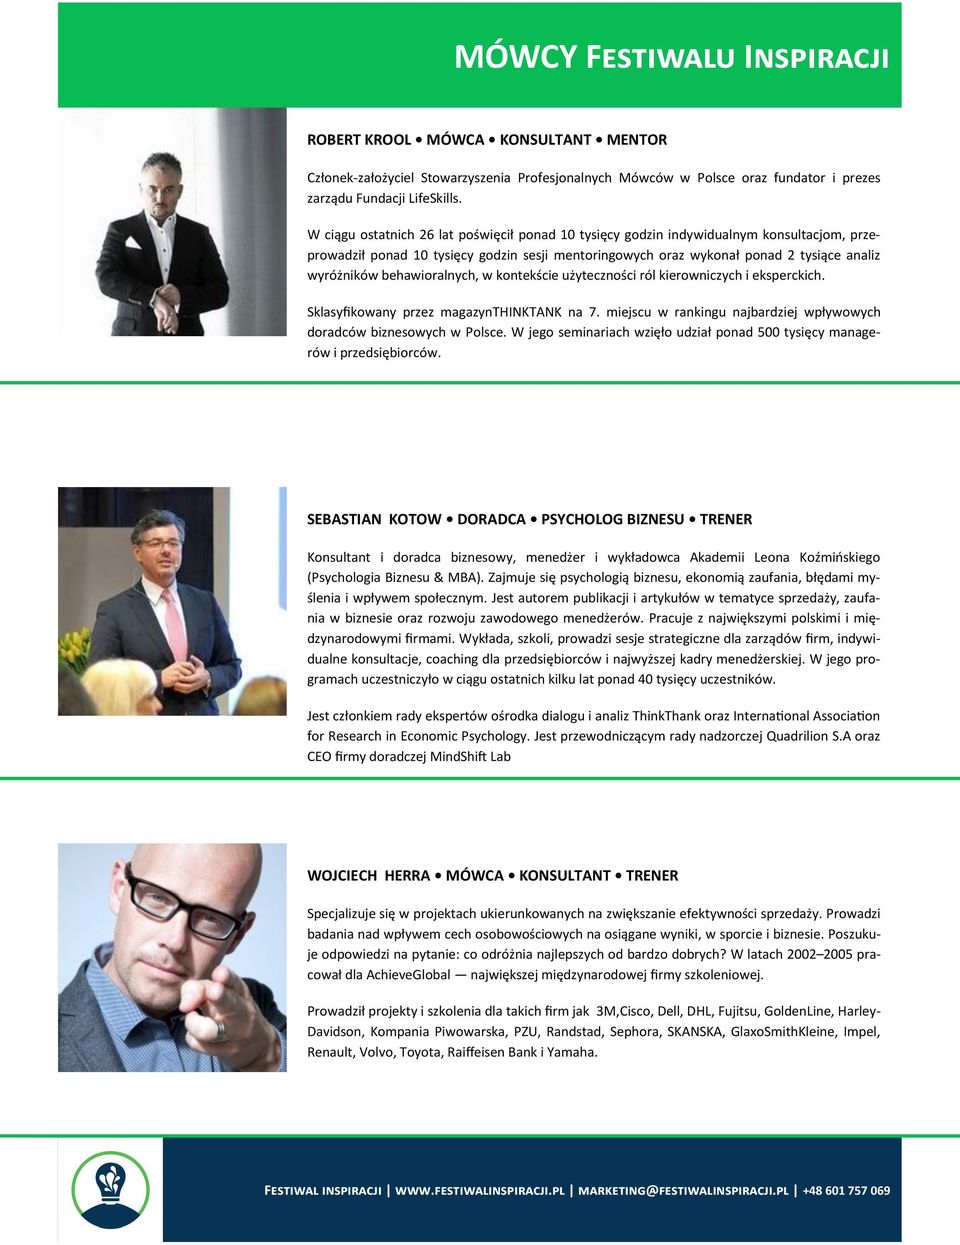 behawioralnych, w kontekście użyteczności ról kierowniczych i eksperckich. Sklasyfikowany przez magazynthinktank na 7. miejscu w rankingu najbardziej wpływowych doradców biznesowych w Polsce.